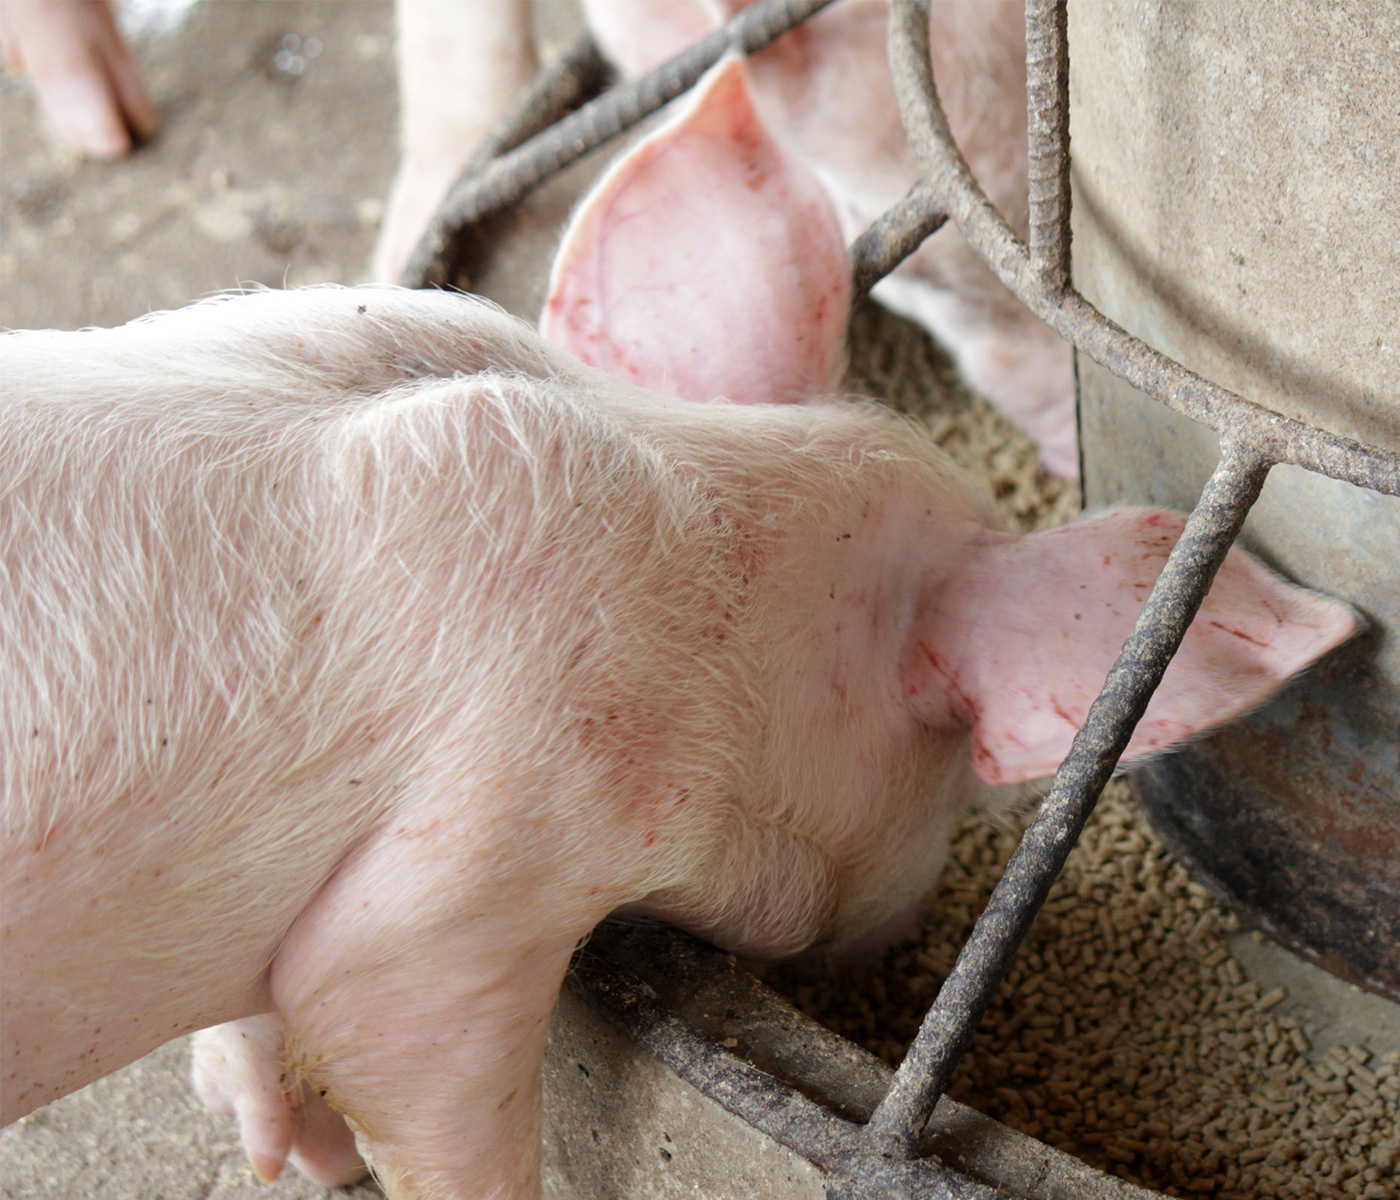 Los comederos de doble espacio, ideales para reducir la agresividad de los cerdos